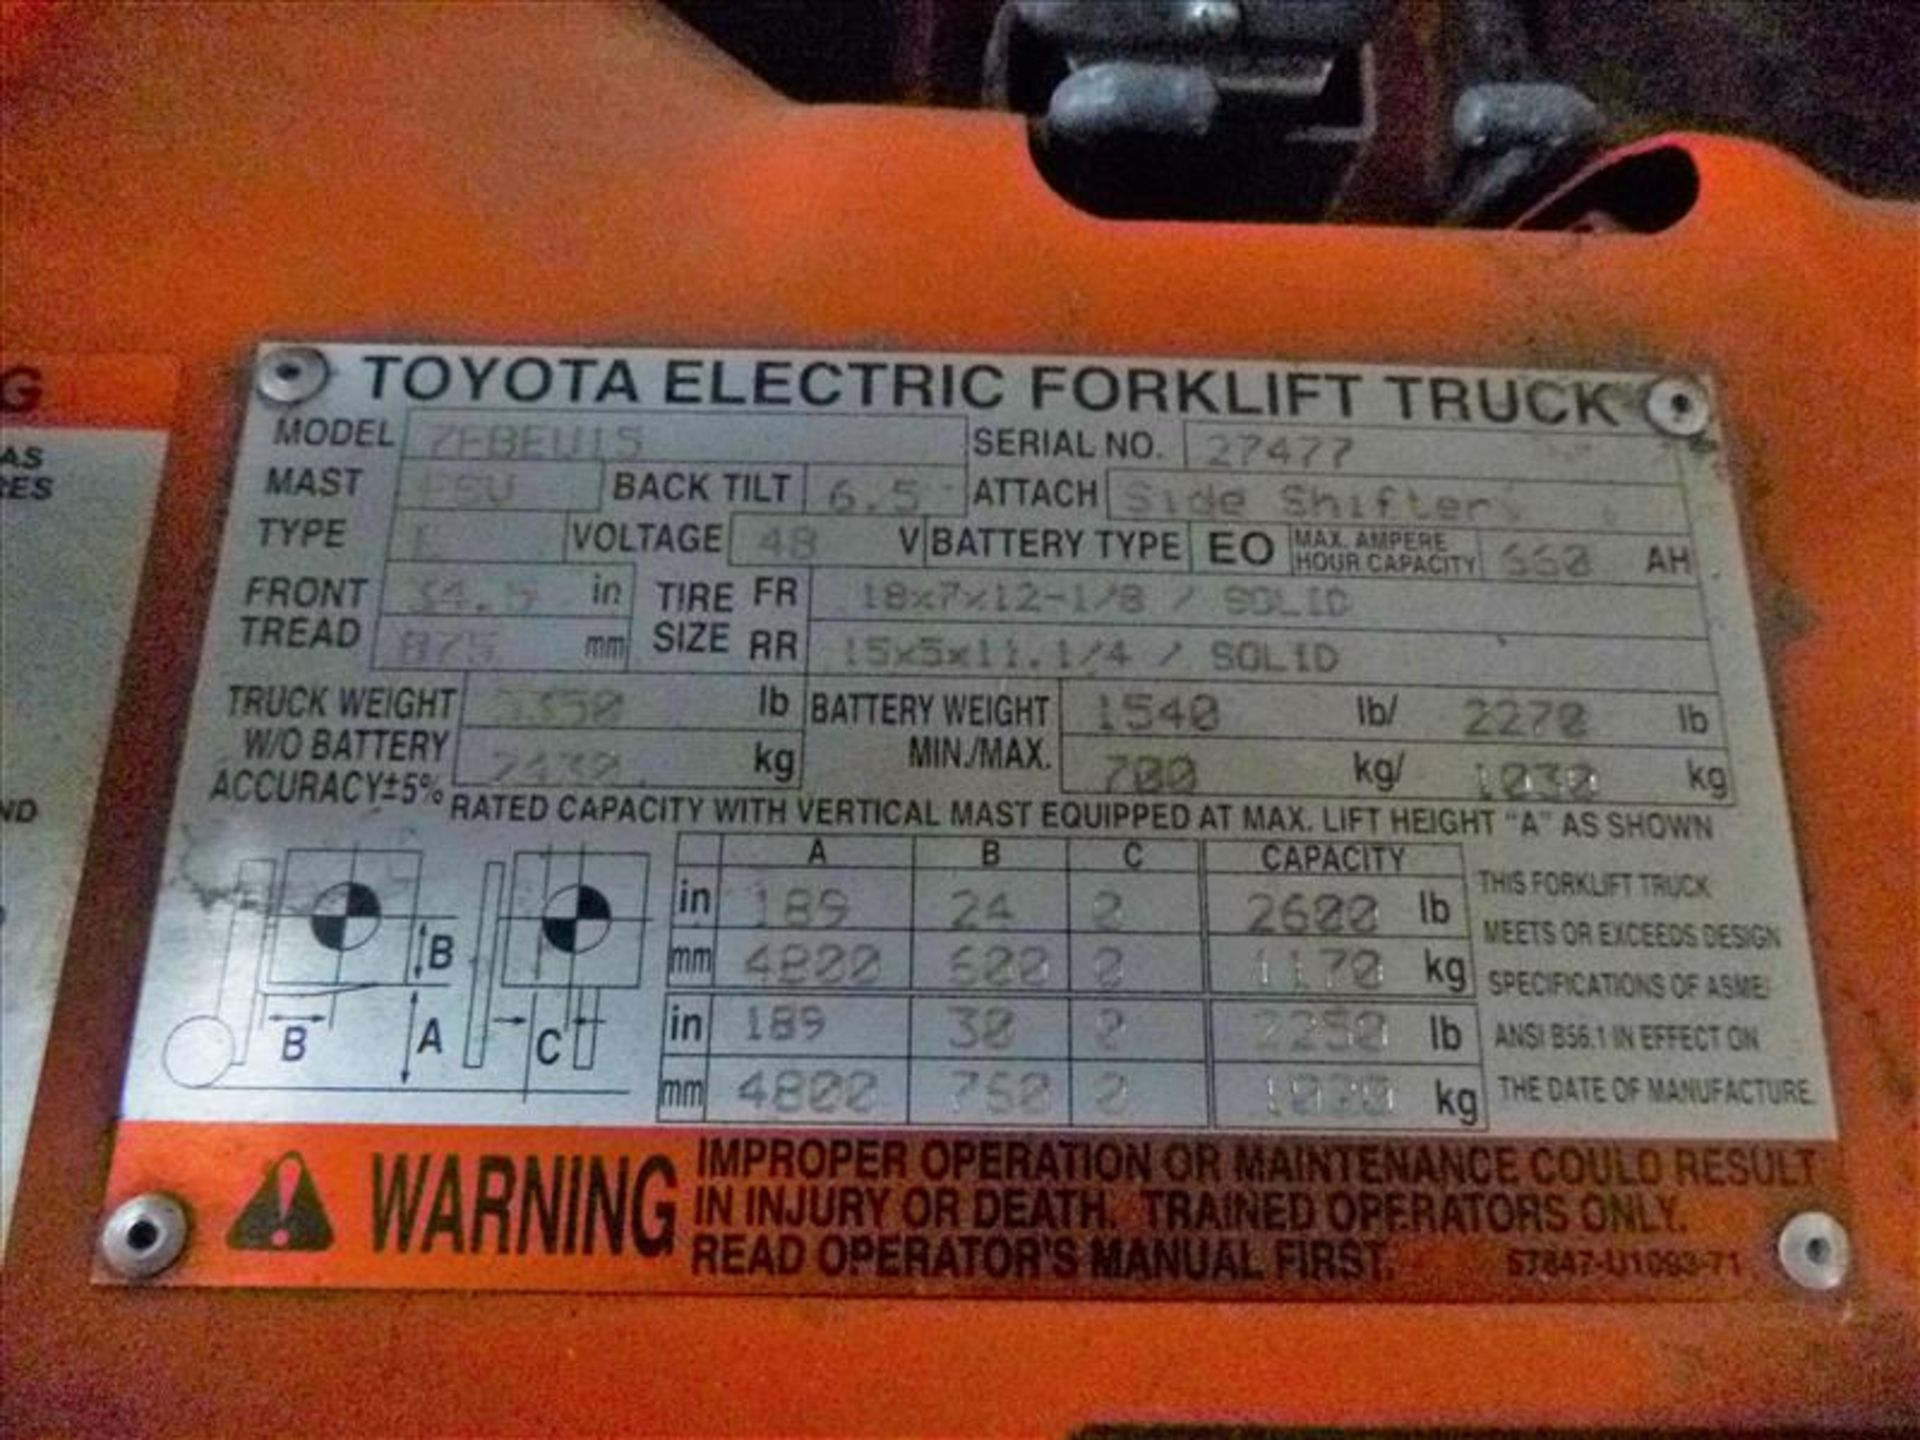 Toyota fork lift truck, mod. 7FBEU15, ser. no. 27447, 2600 lb. cap., 48V, 3-stage, side-shift, 3- - Image 3 of 4